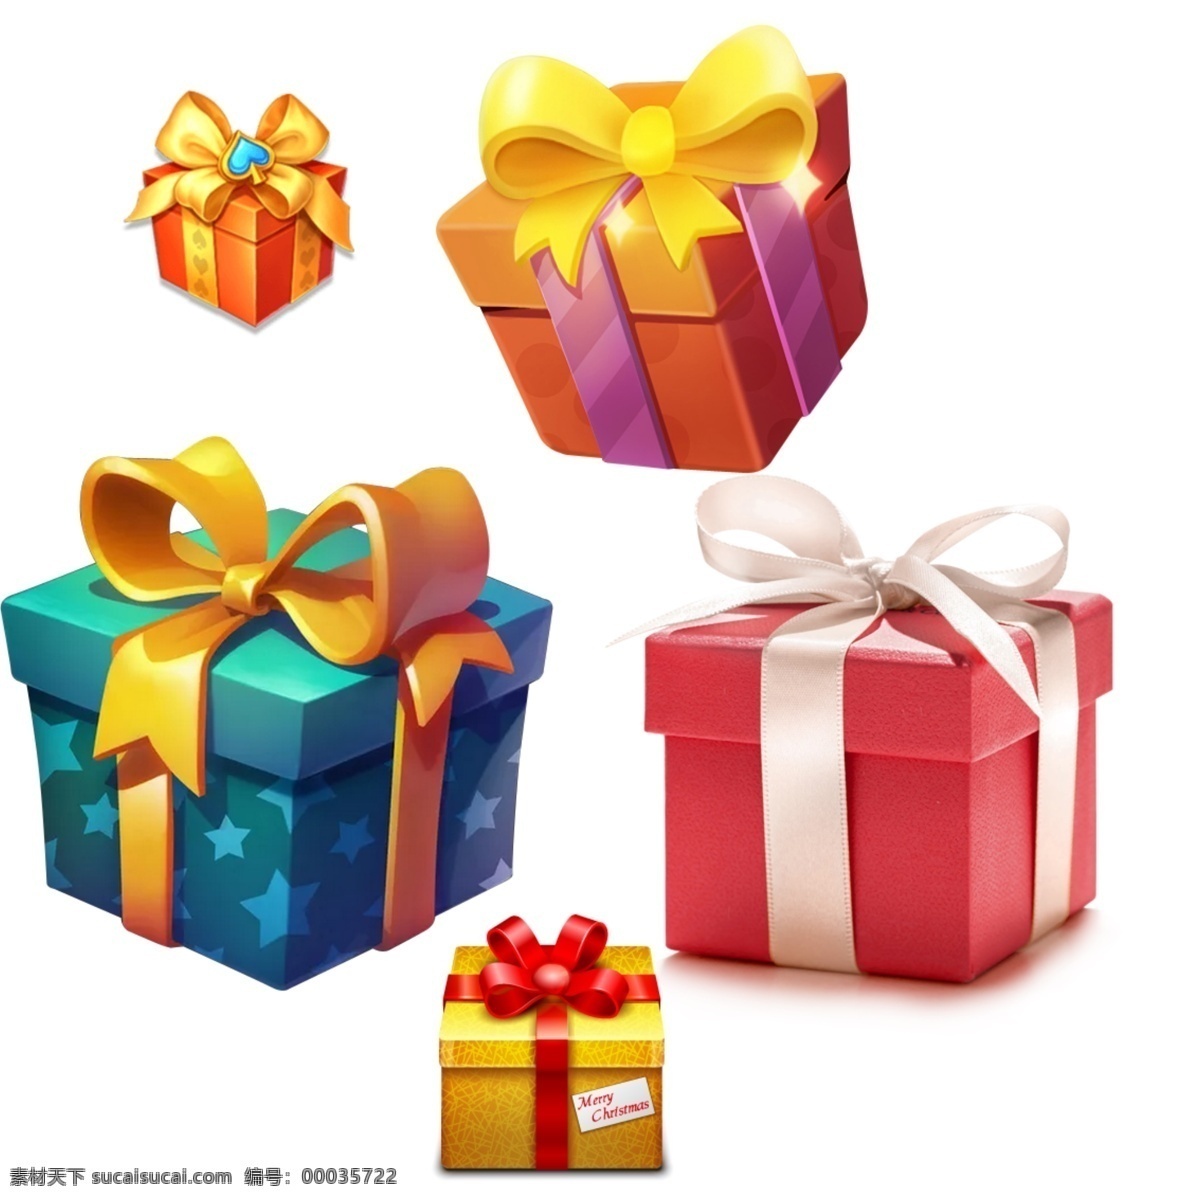 礼包 礼物 礼物包装 礼物盒 礼物盒子 礼物矢量 礼物素材 礼物盒子汇总 精美礼盒 红色 黄色 橙色 蓝色 绿色 紫色 白色 复古礼盒 时尚礼盒 礼盒包装